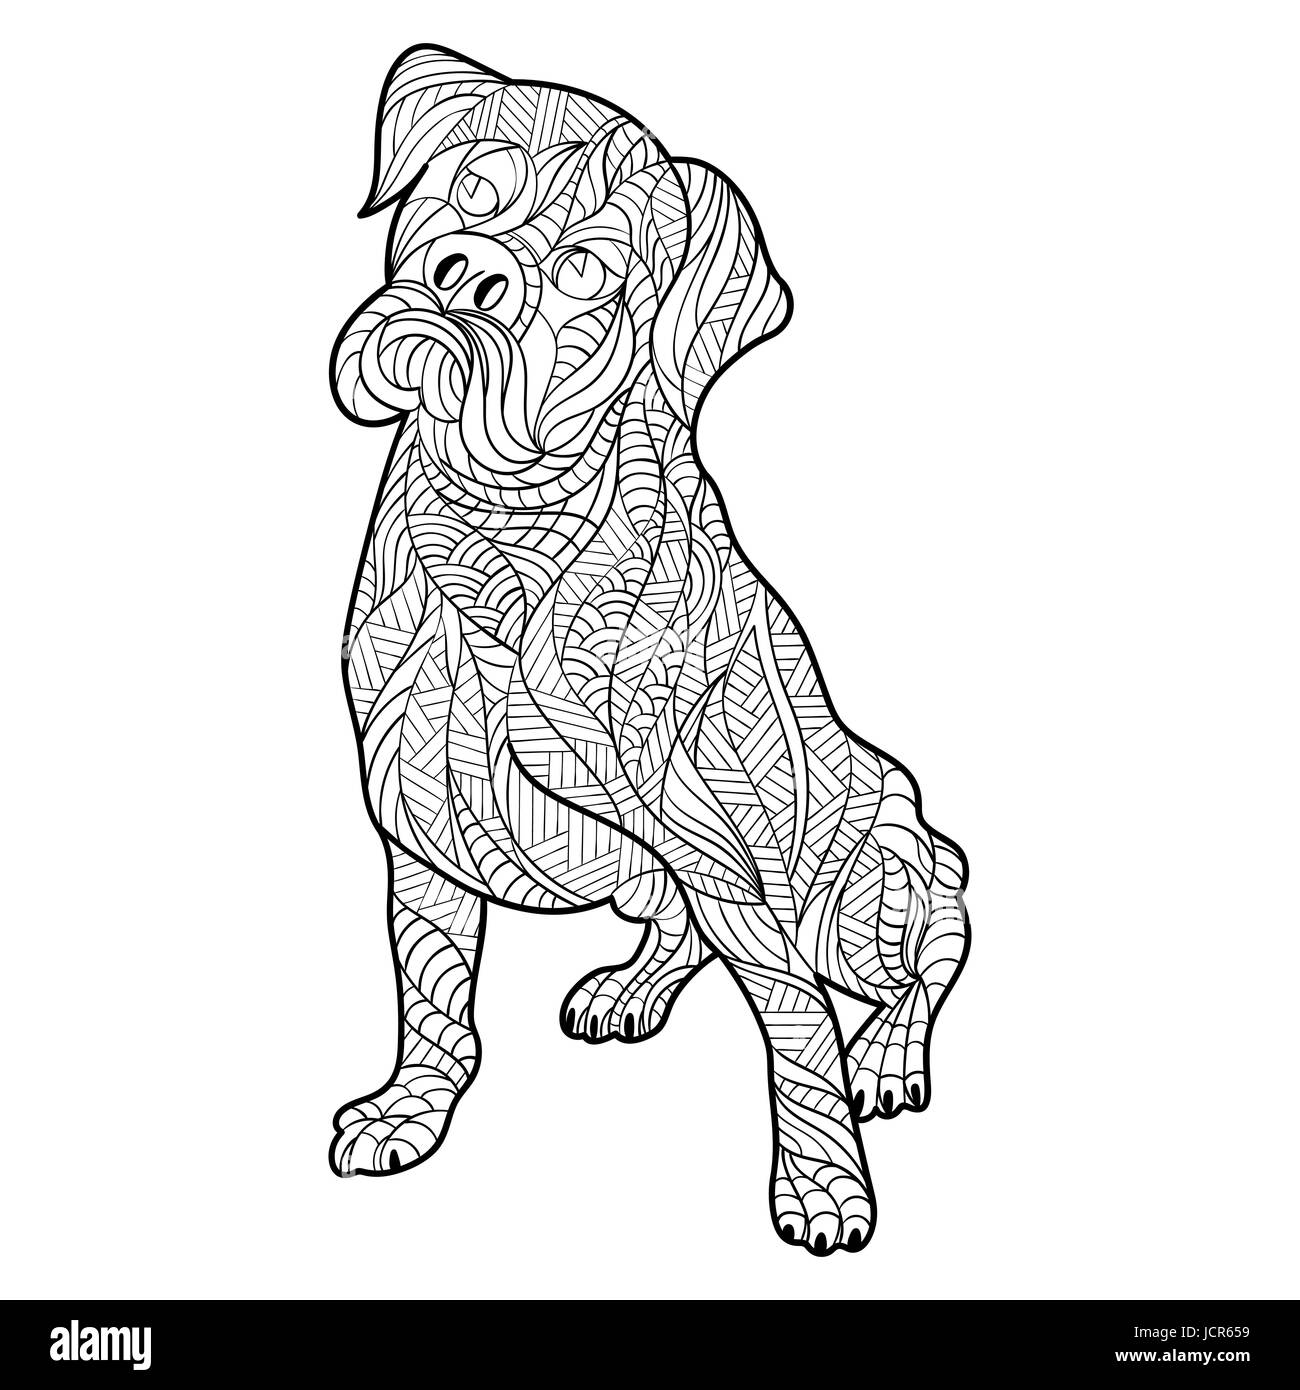 La main zentagle monochrome vecteur illustration de chien boxer Coloriage avec détails haute isolé sur